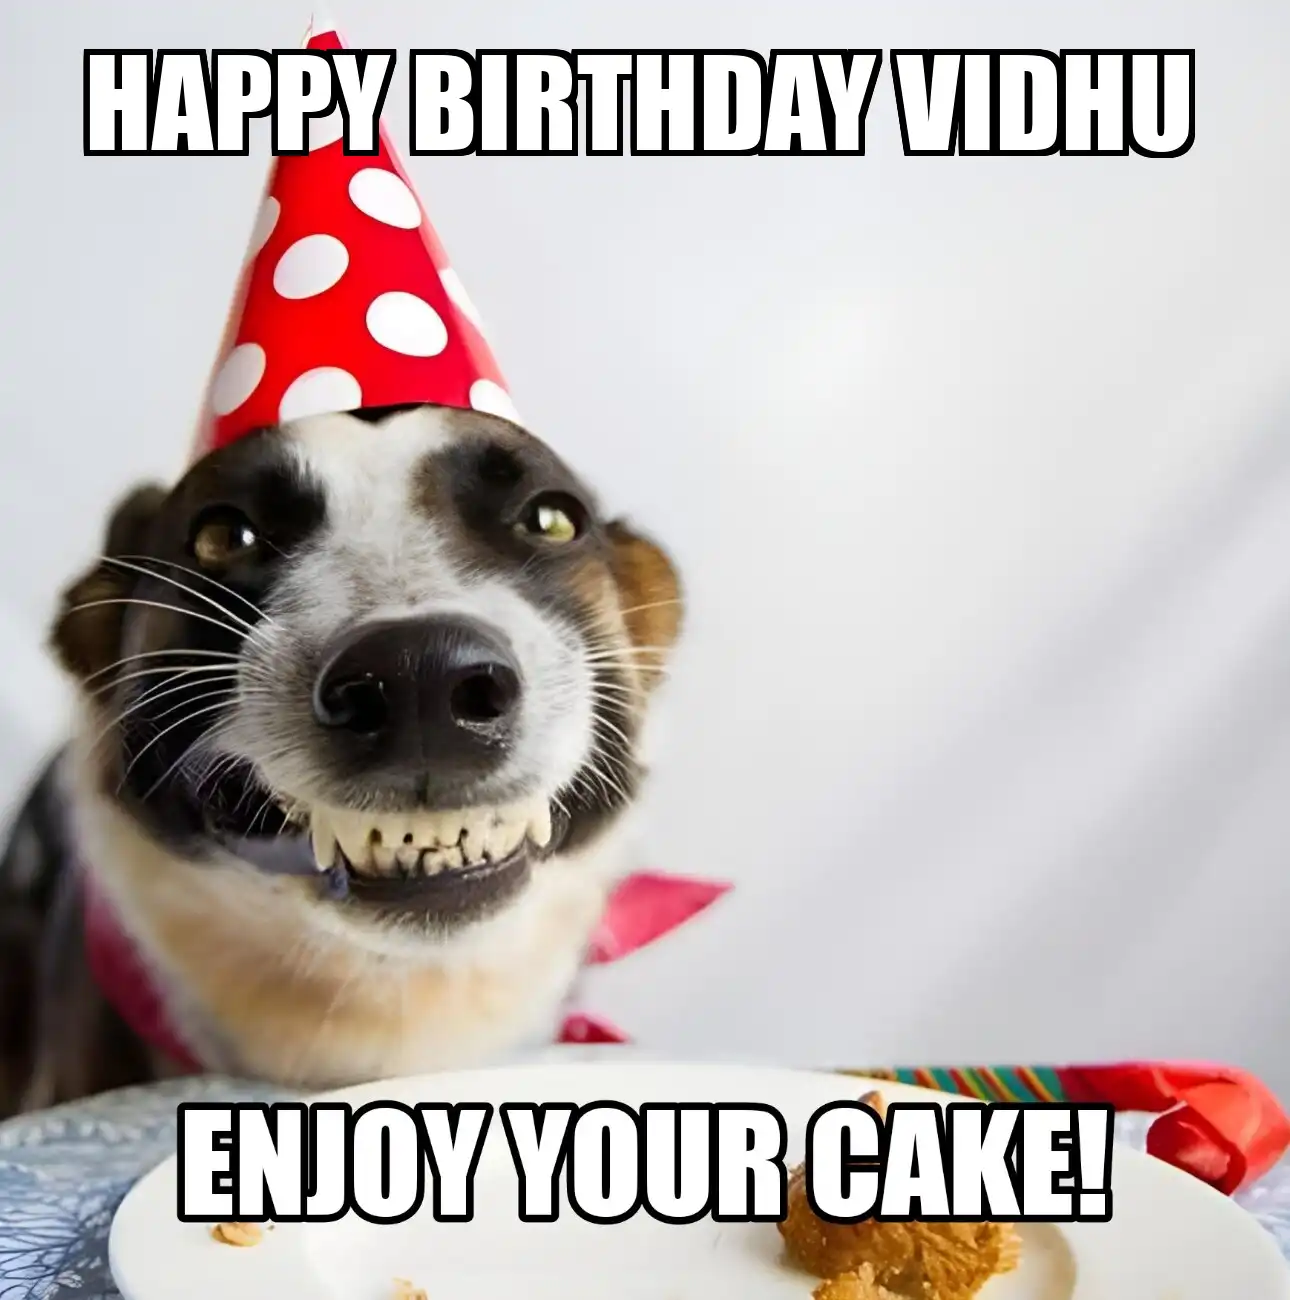 Happy Birthday Vidhu Enjoy Your Cake Dog Meme